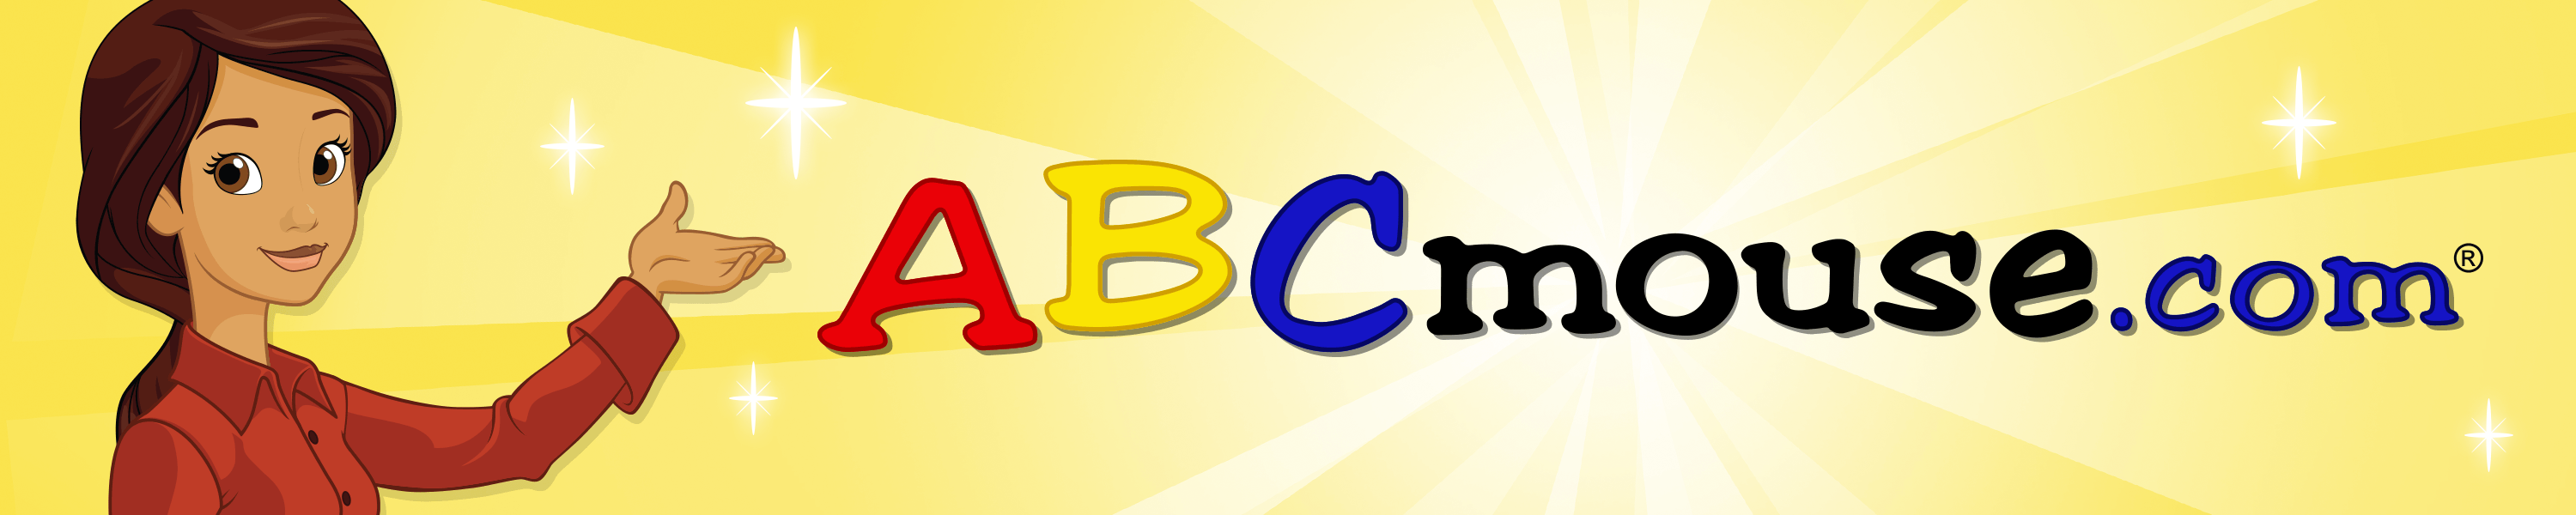 Abcmouse.com Logo - ABCmouse.com